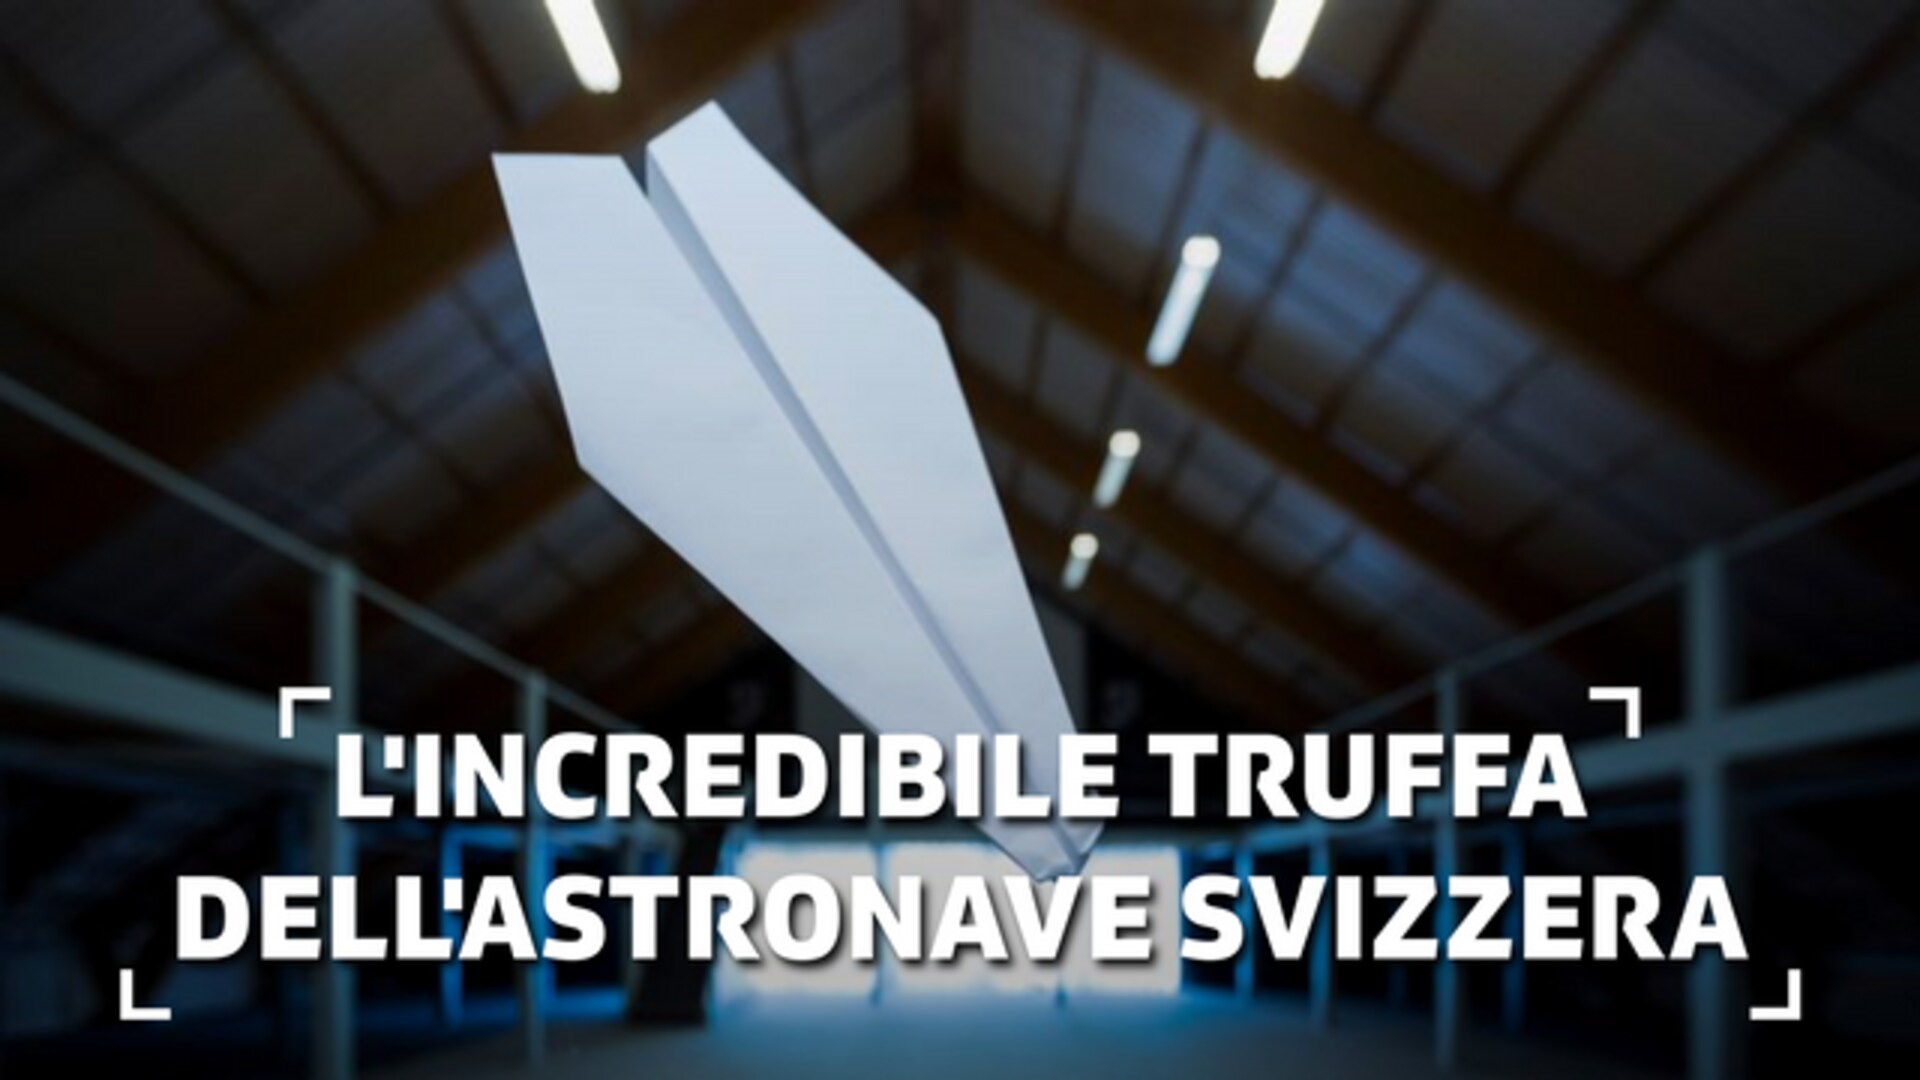 L'incredibile truffa dell'astronave svizzera